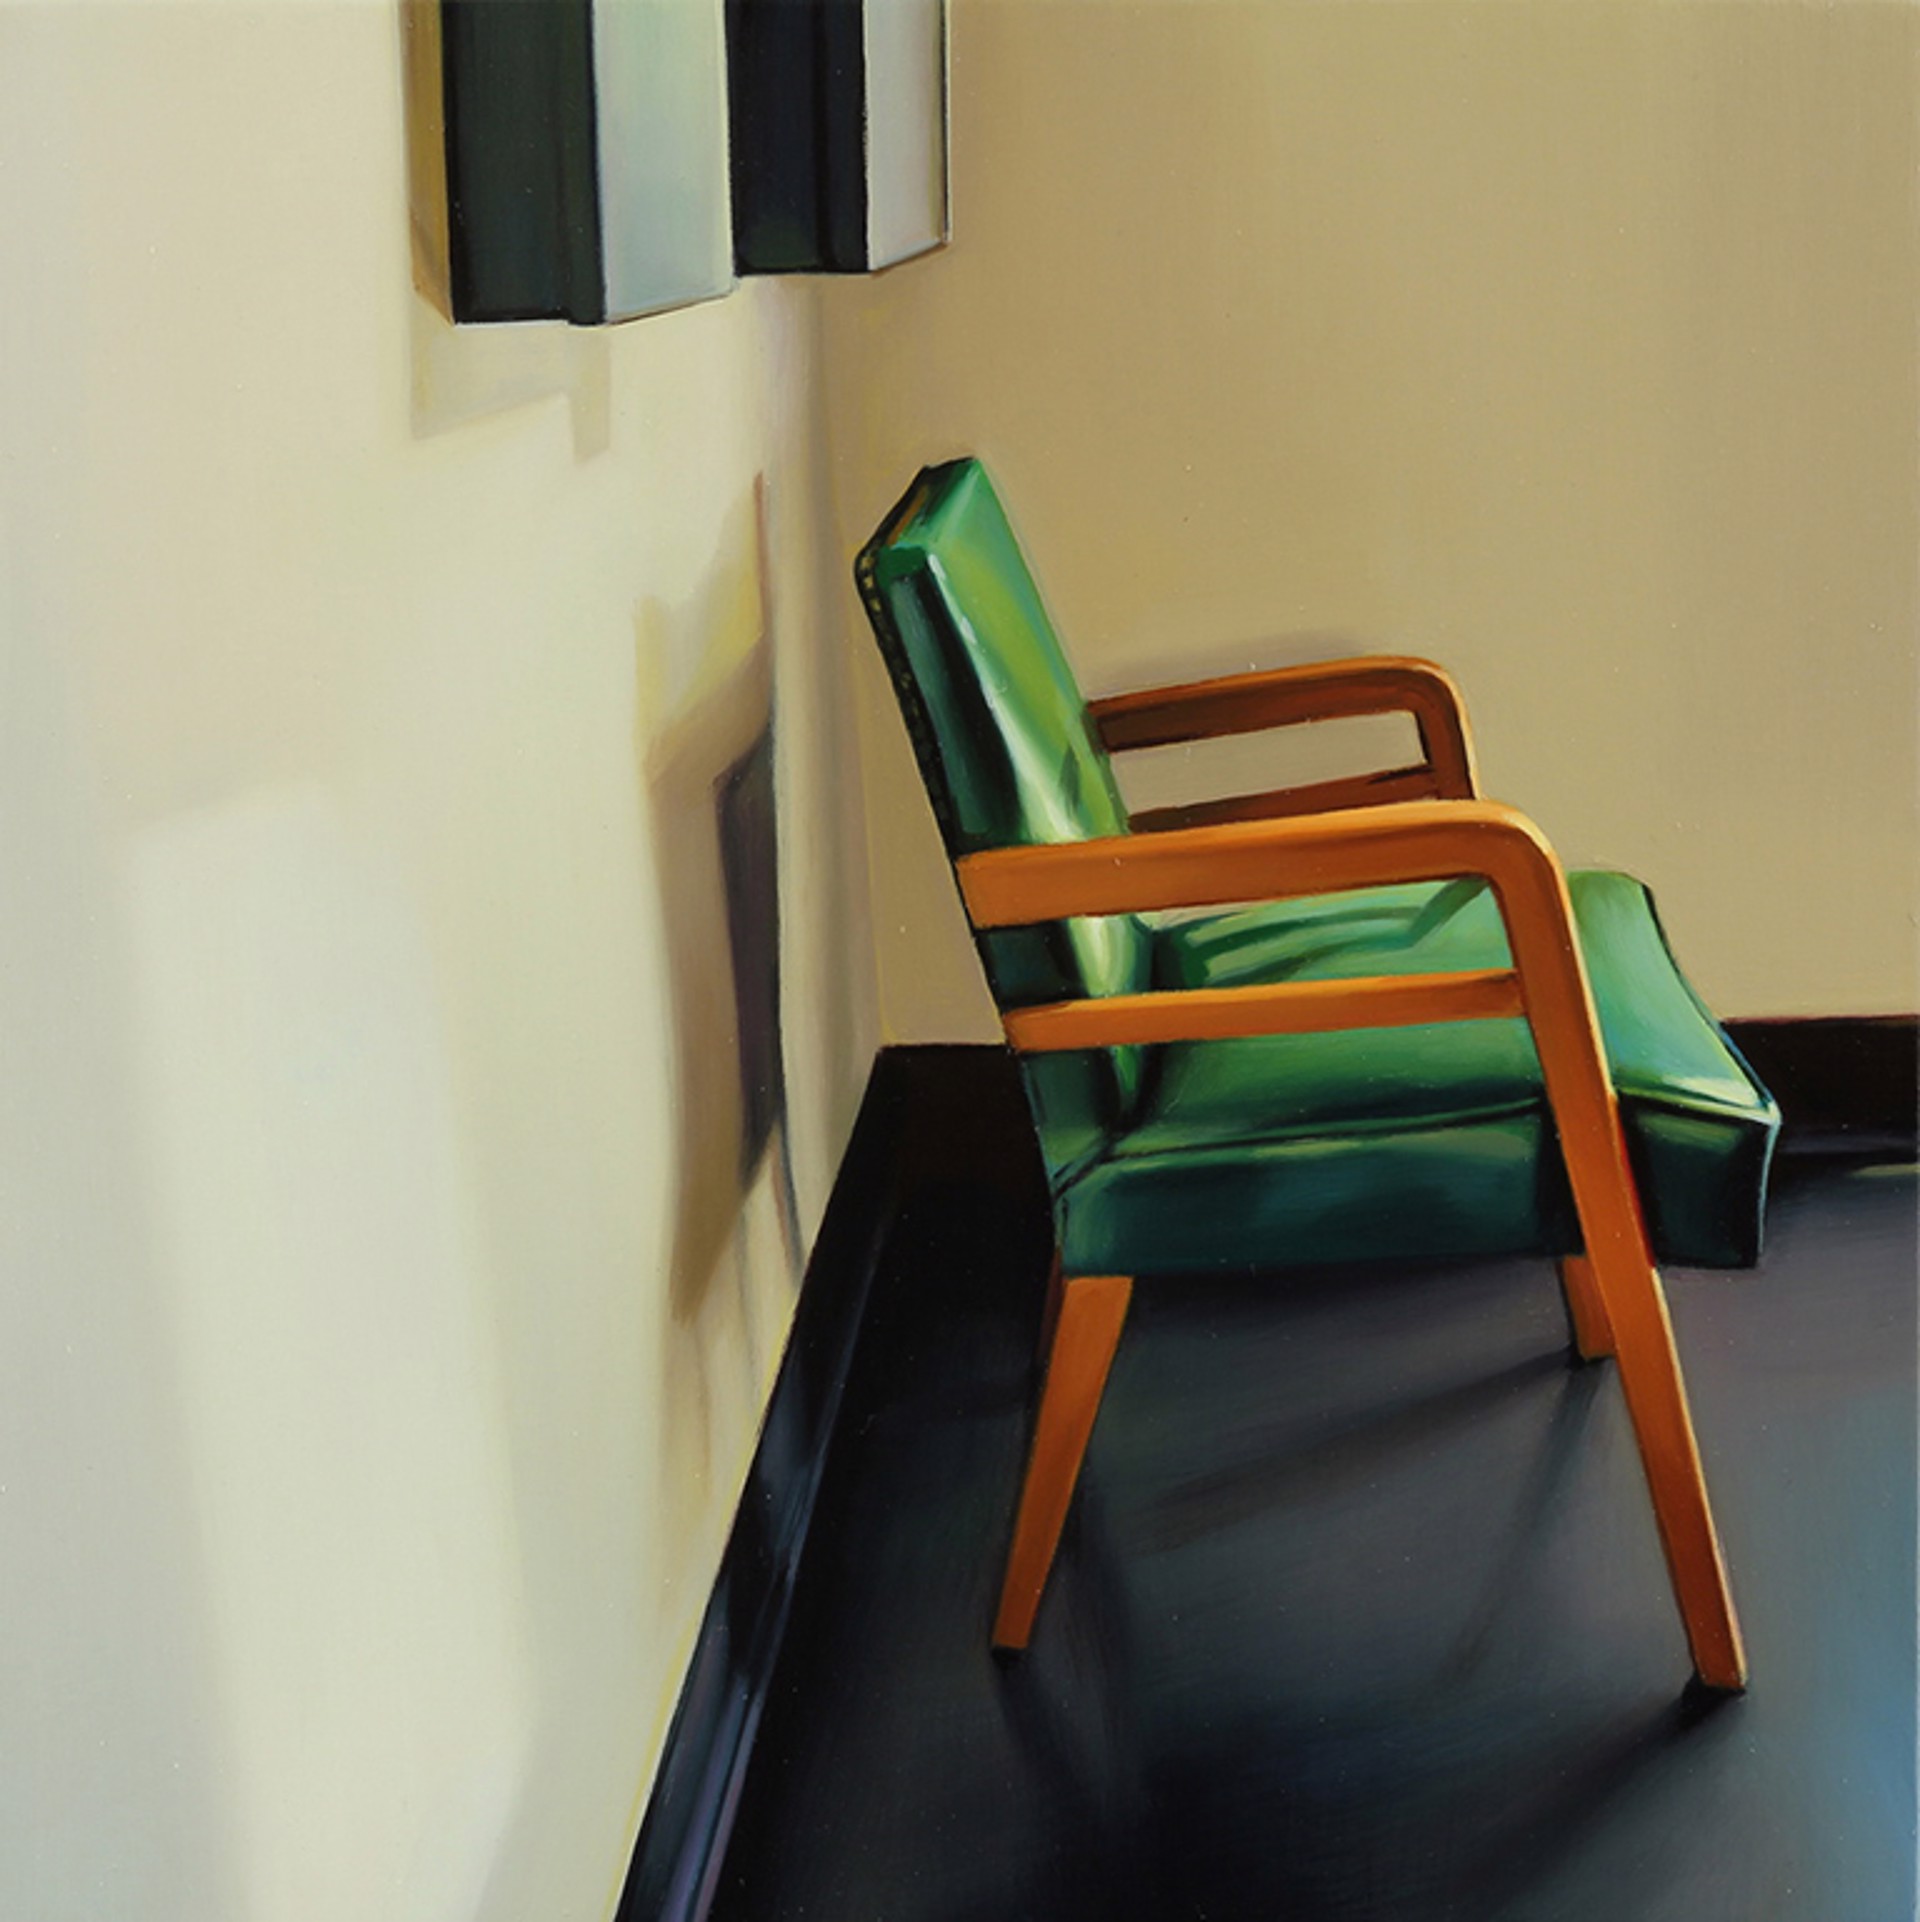 Fort Mason Chair #1 by Ada Sadler